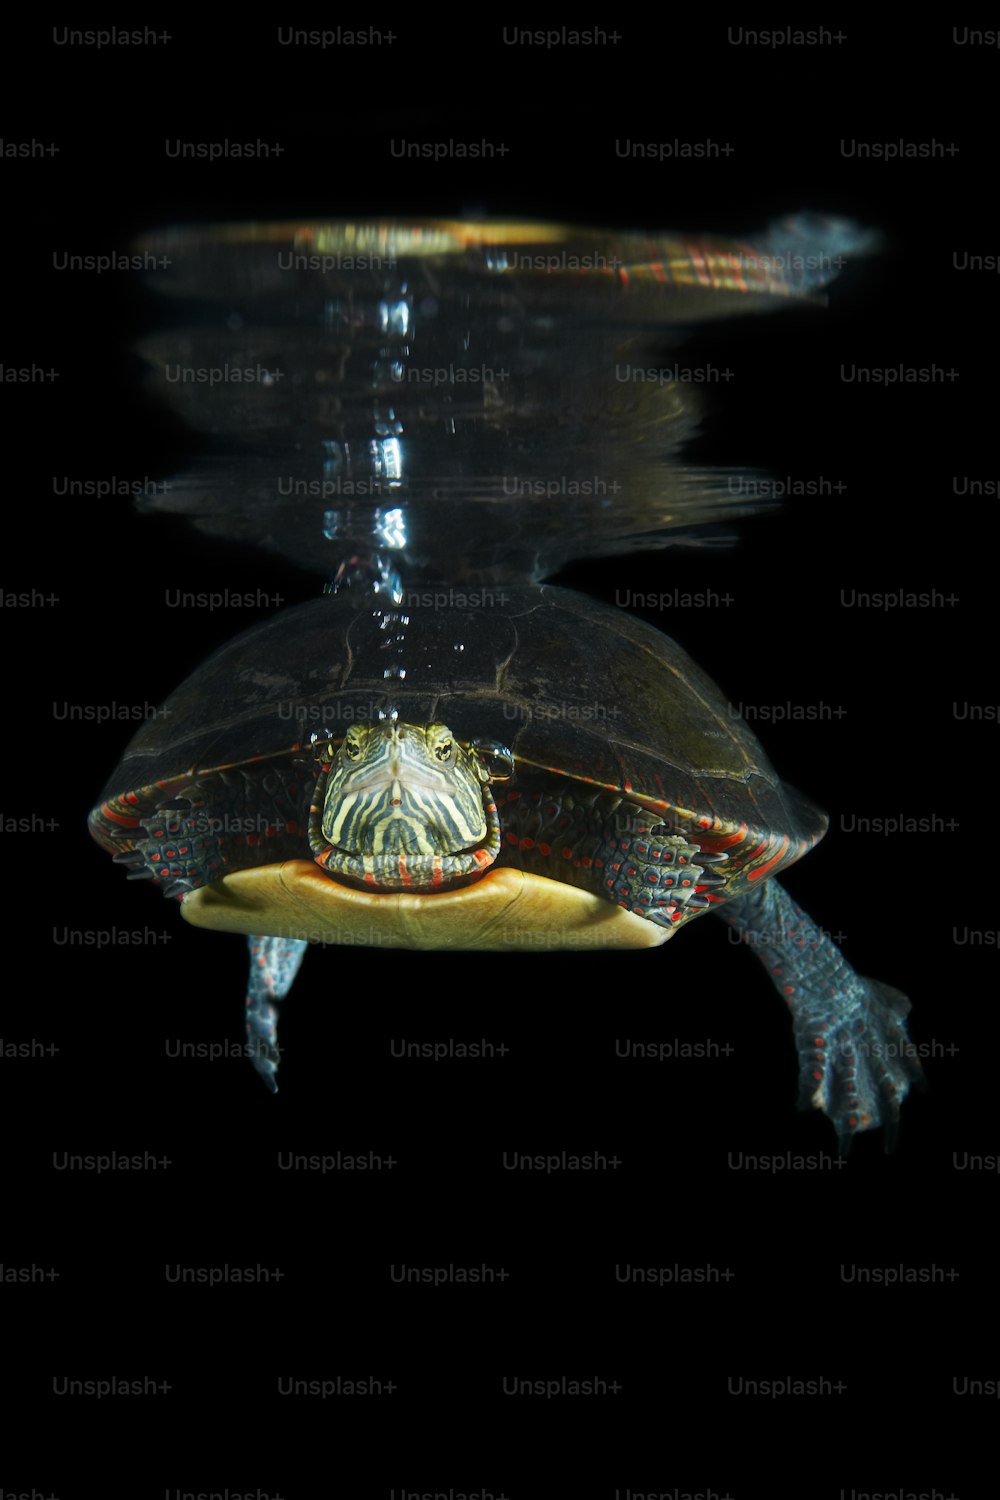 Una tortuga nadando en el agua por la noche